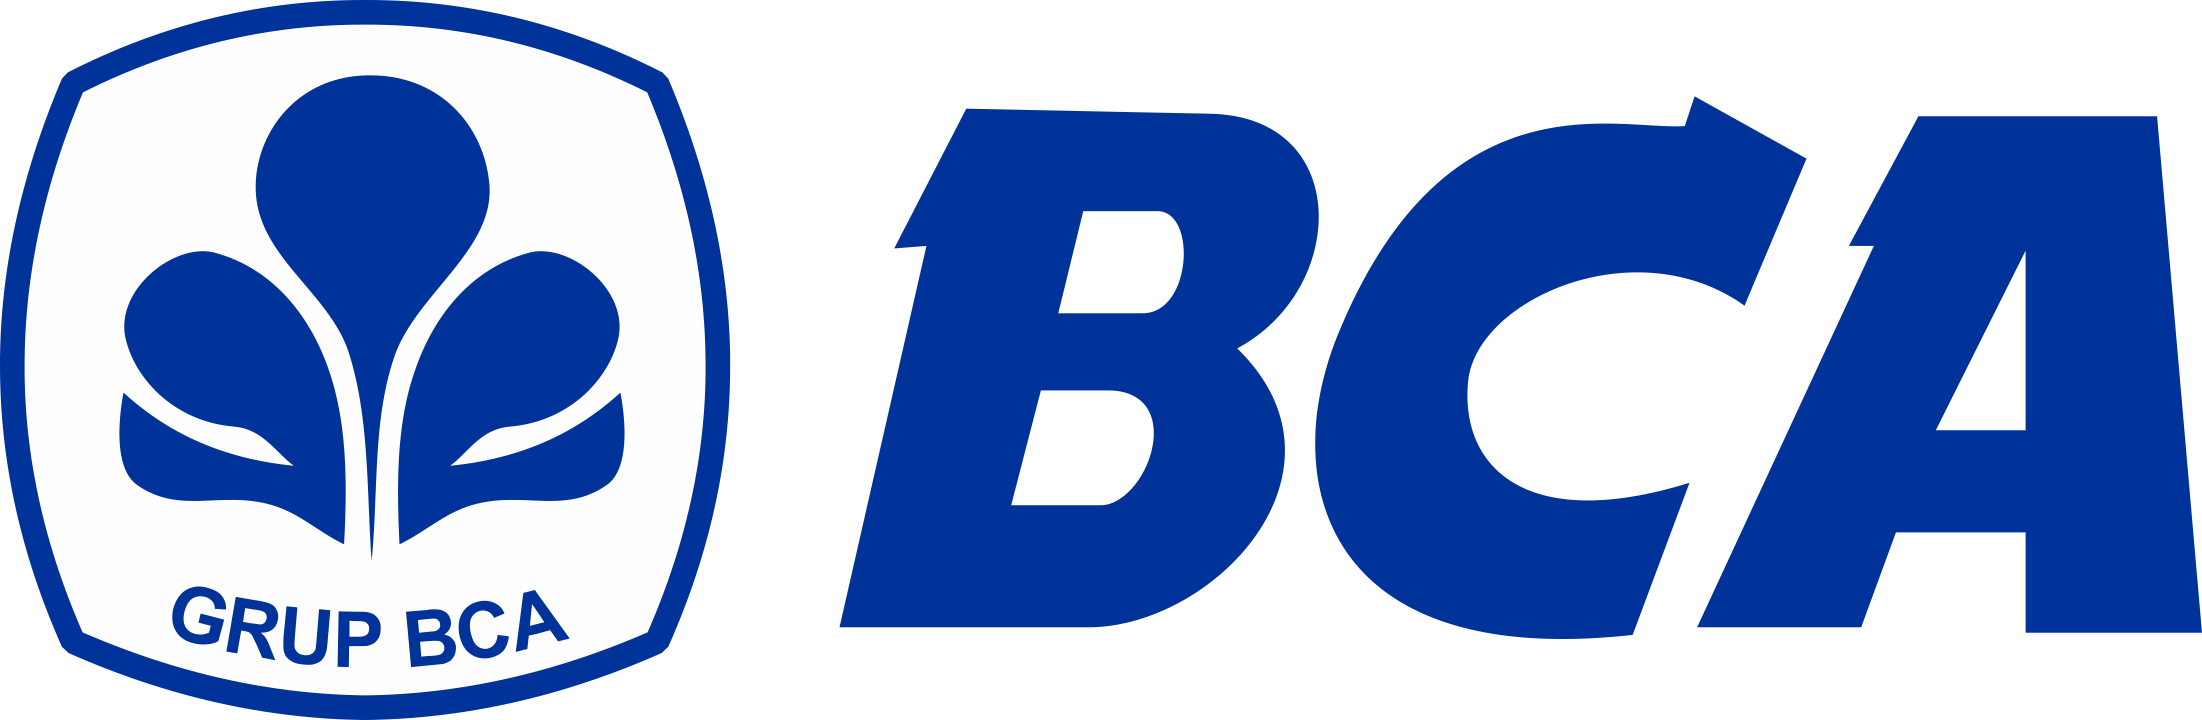 Bank-BCA-Logo-PNG-720p-FileVector69-1-1-1-1.png